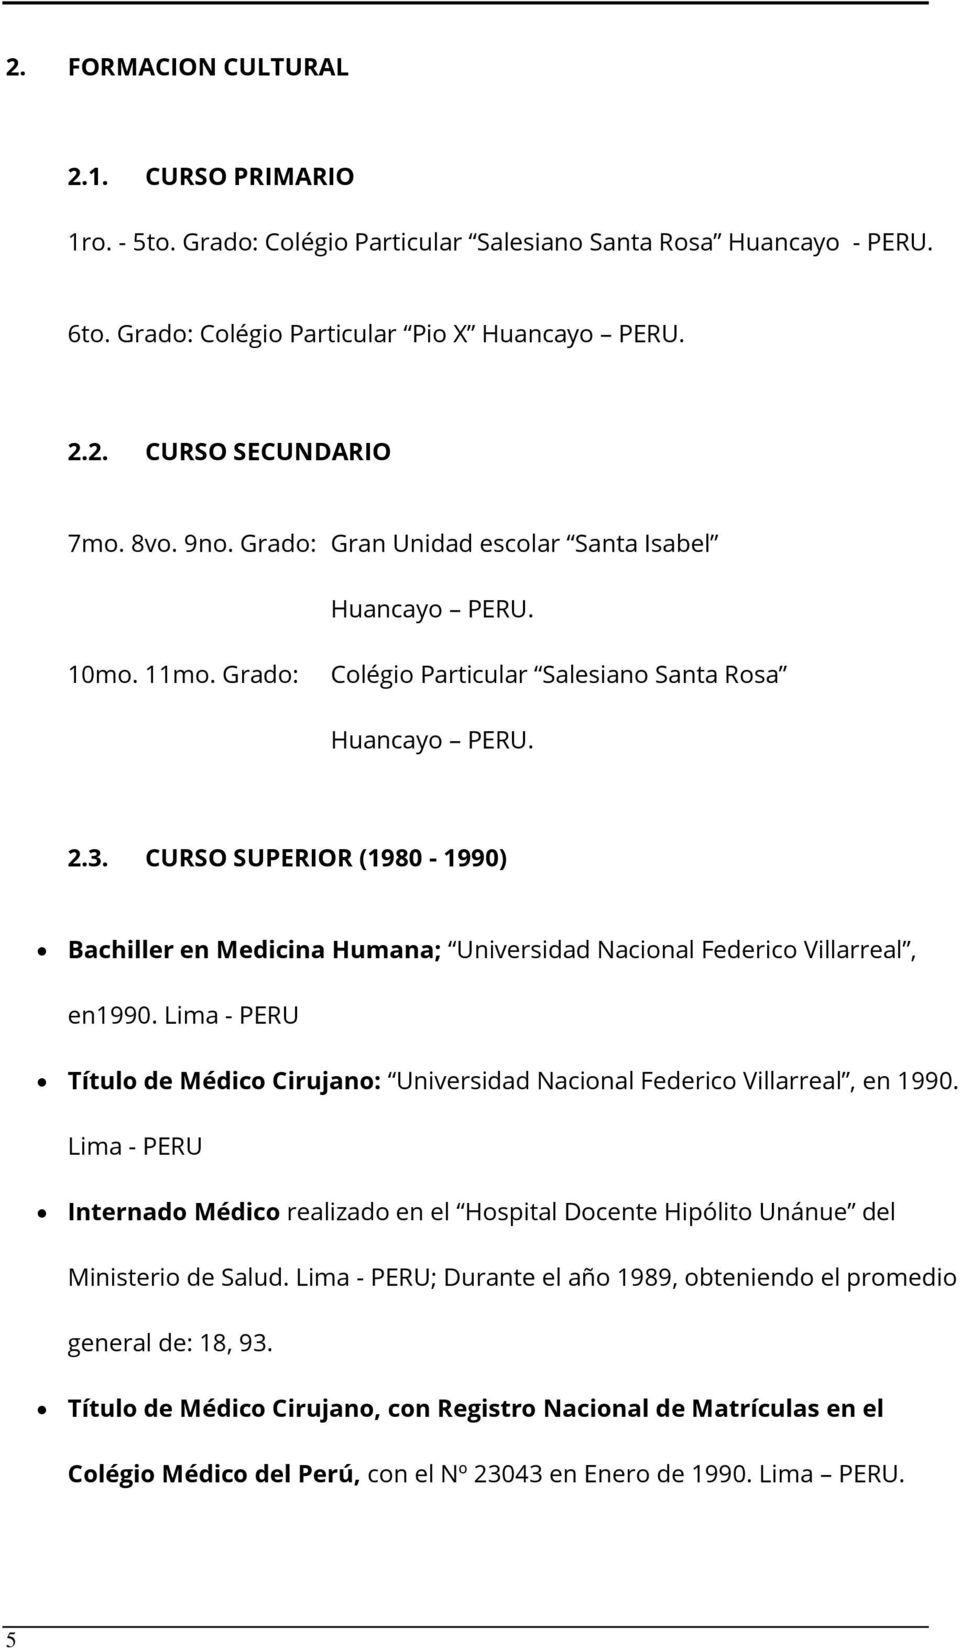 CURSO SUPERIOR (1980-1990) Bachiller en Medicina Humana; Universidad Nacional Federico Villarreal, en1990. Lima - PERU Título de Médico Cirujano: Universidad Nacional Federico Villarreal, en 1990.